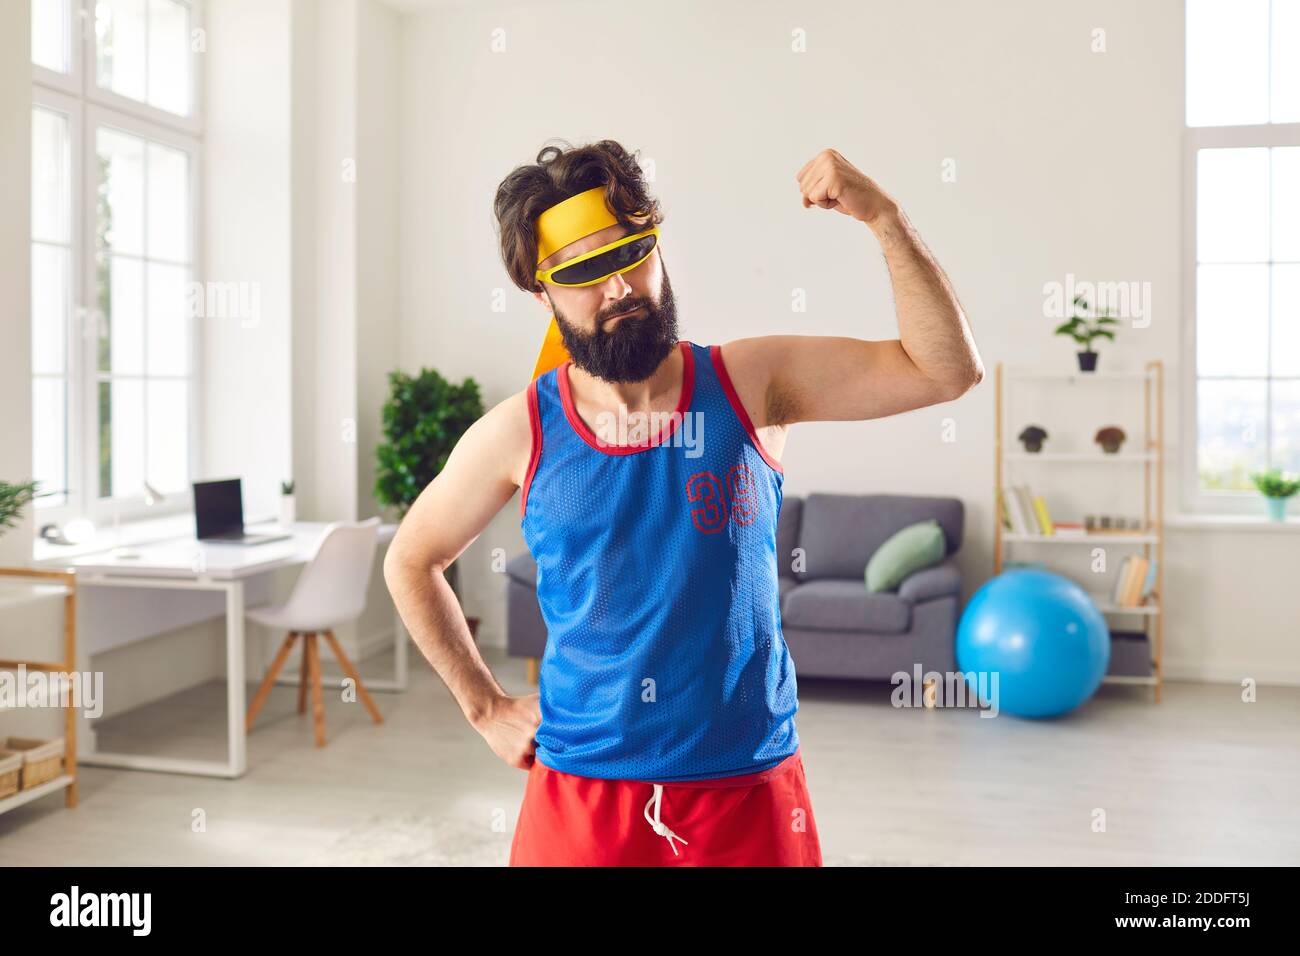 Lustiger Sportler prahlt mit seinen dünnen, schwachen Armmuskeln nach dem Sport-Training zu Hause Stockfoto